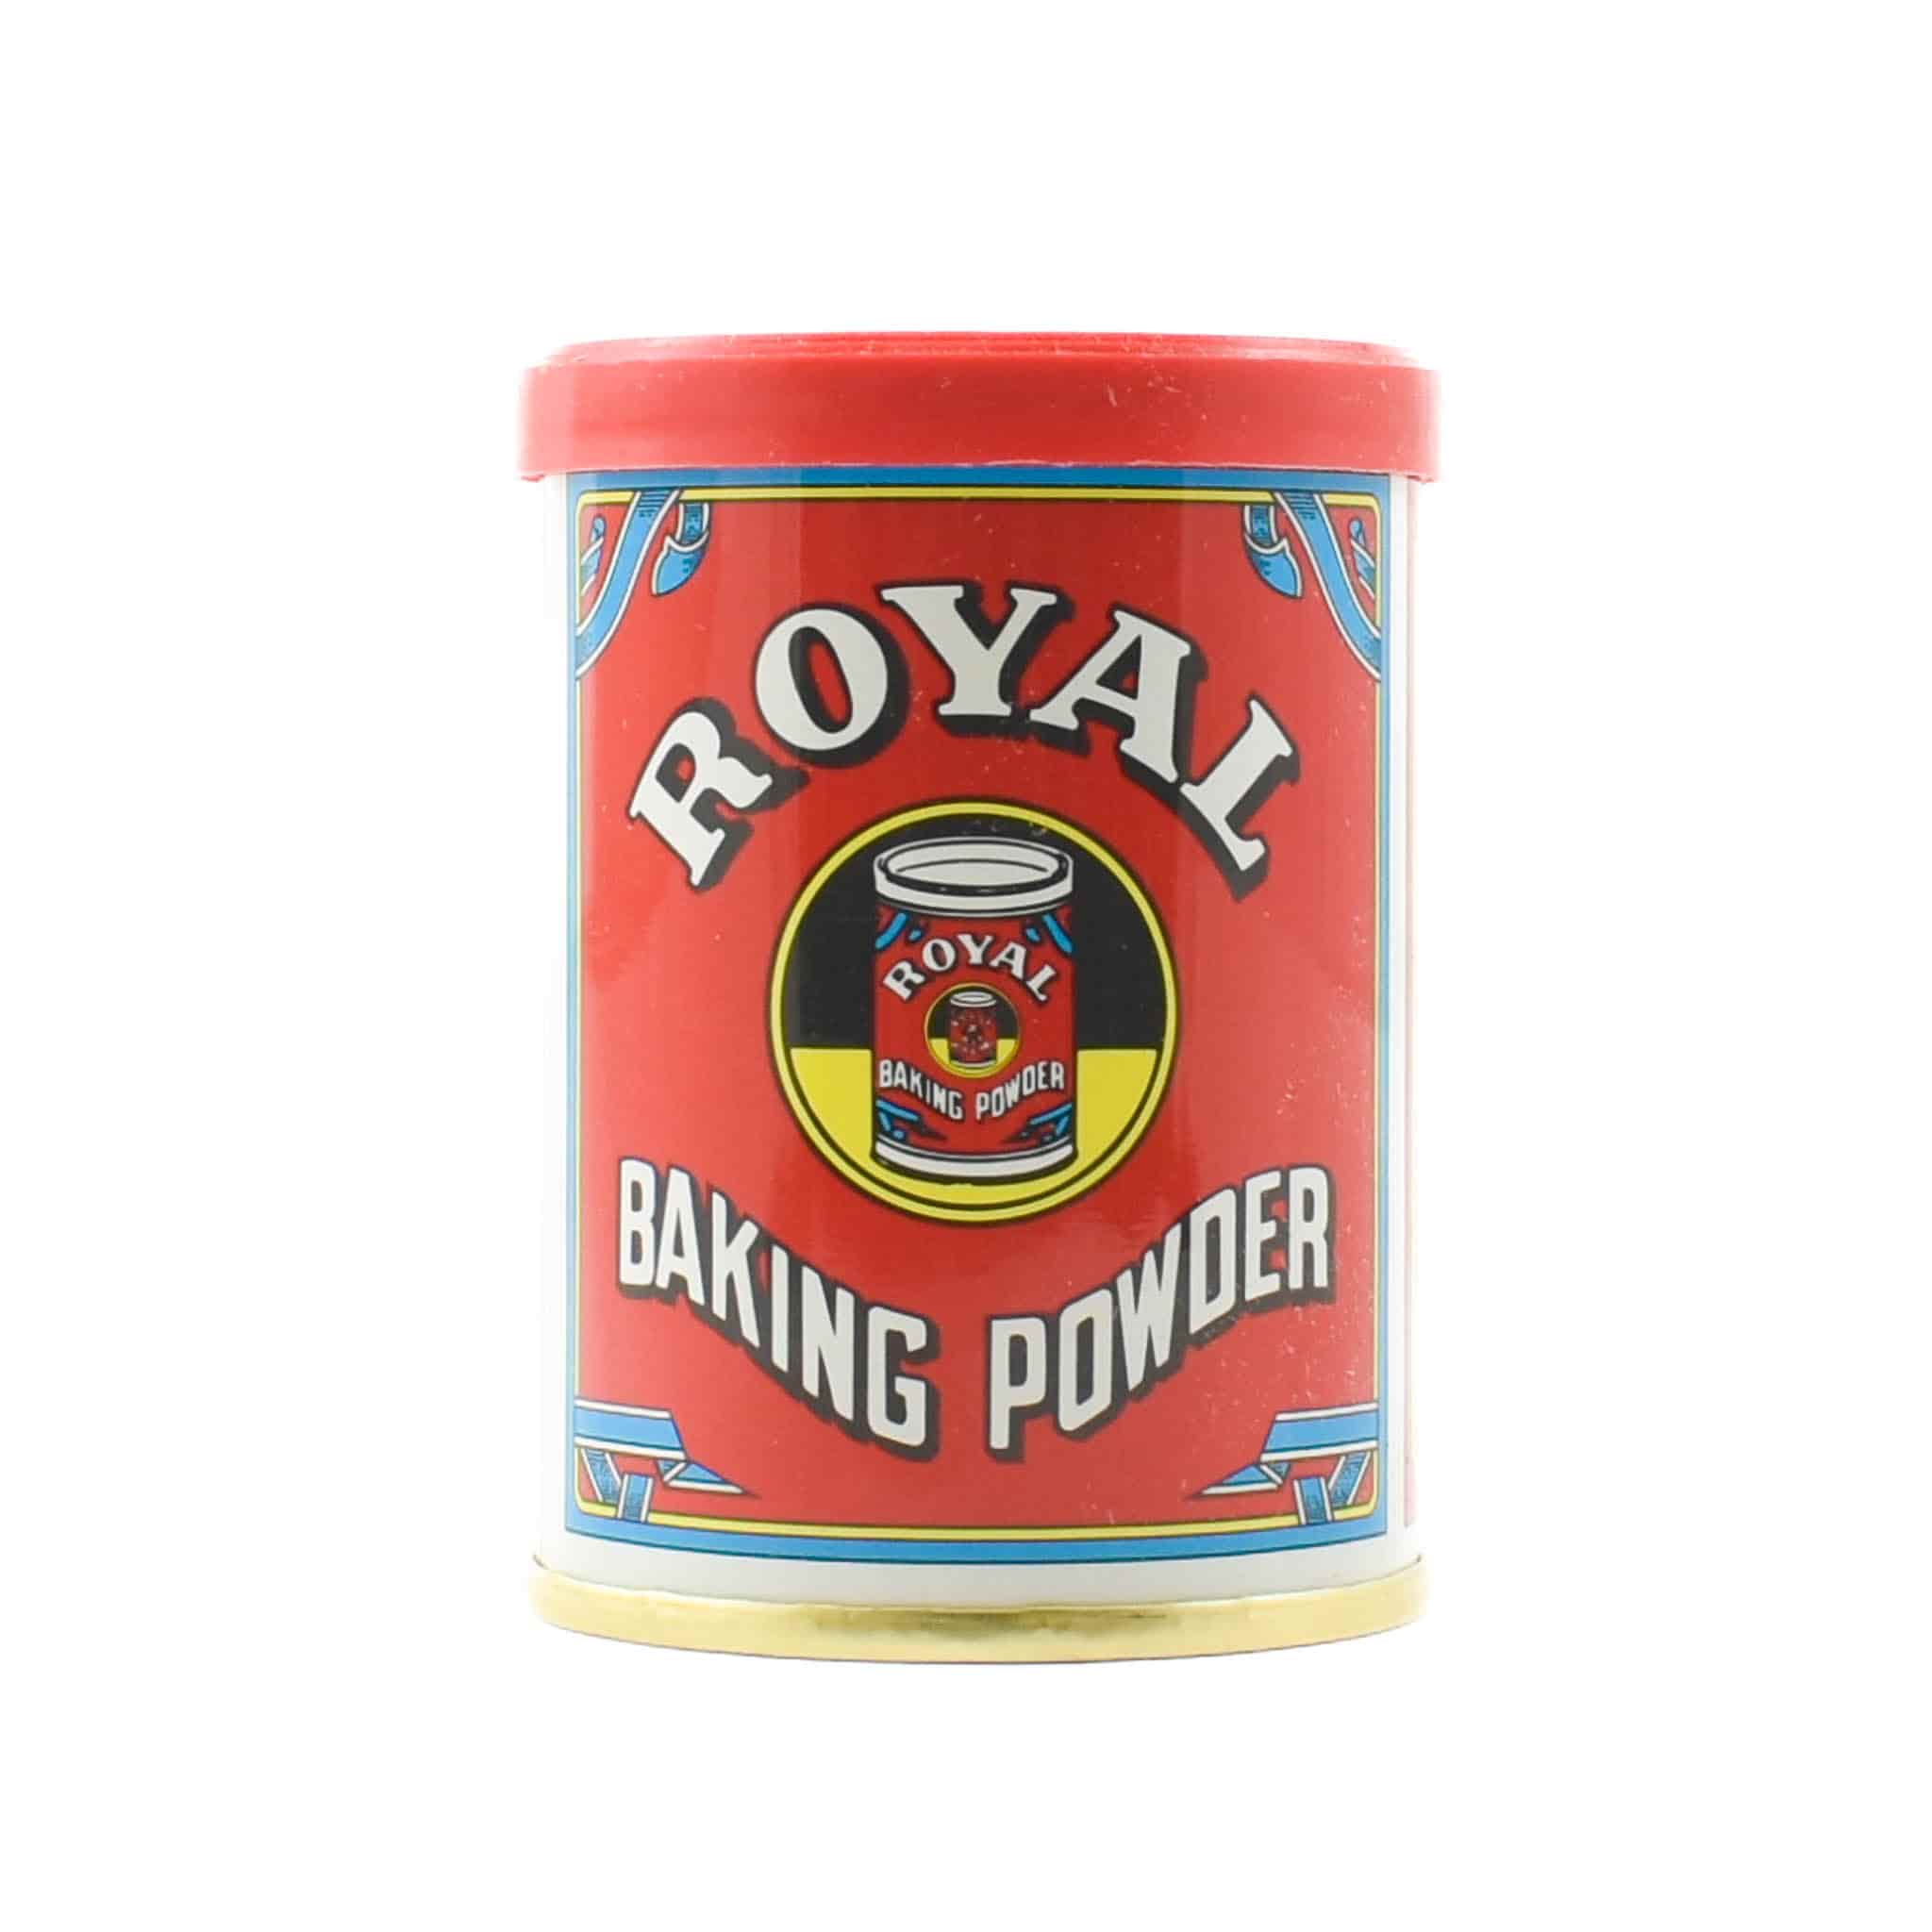 Royal Baking Powder Tin, 113g